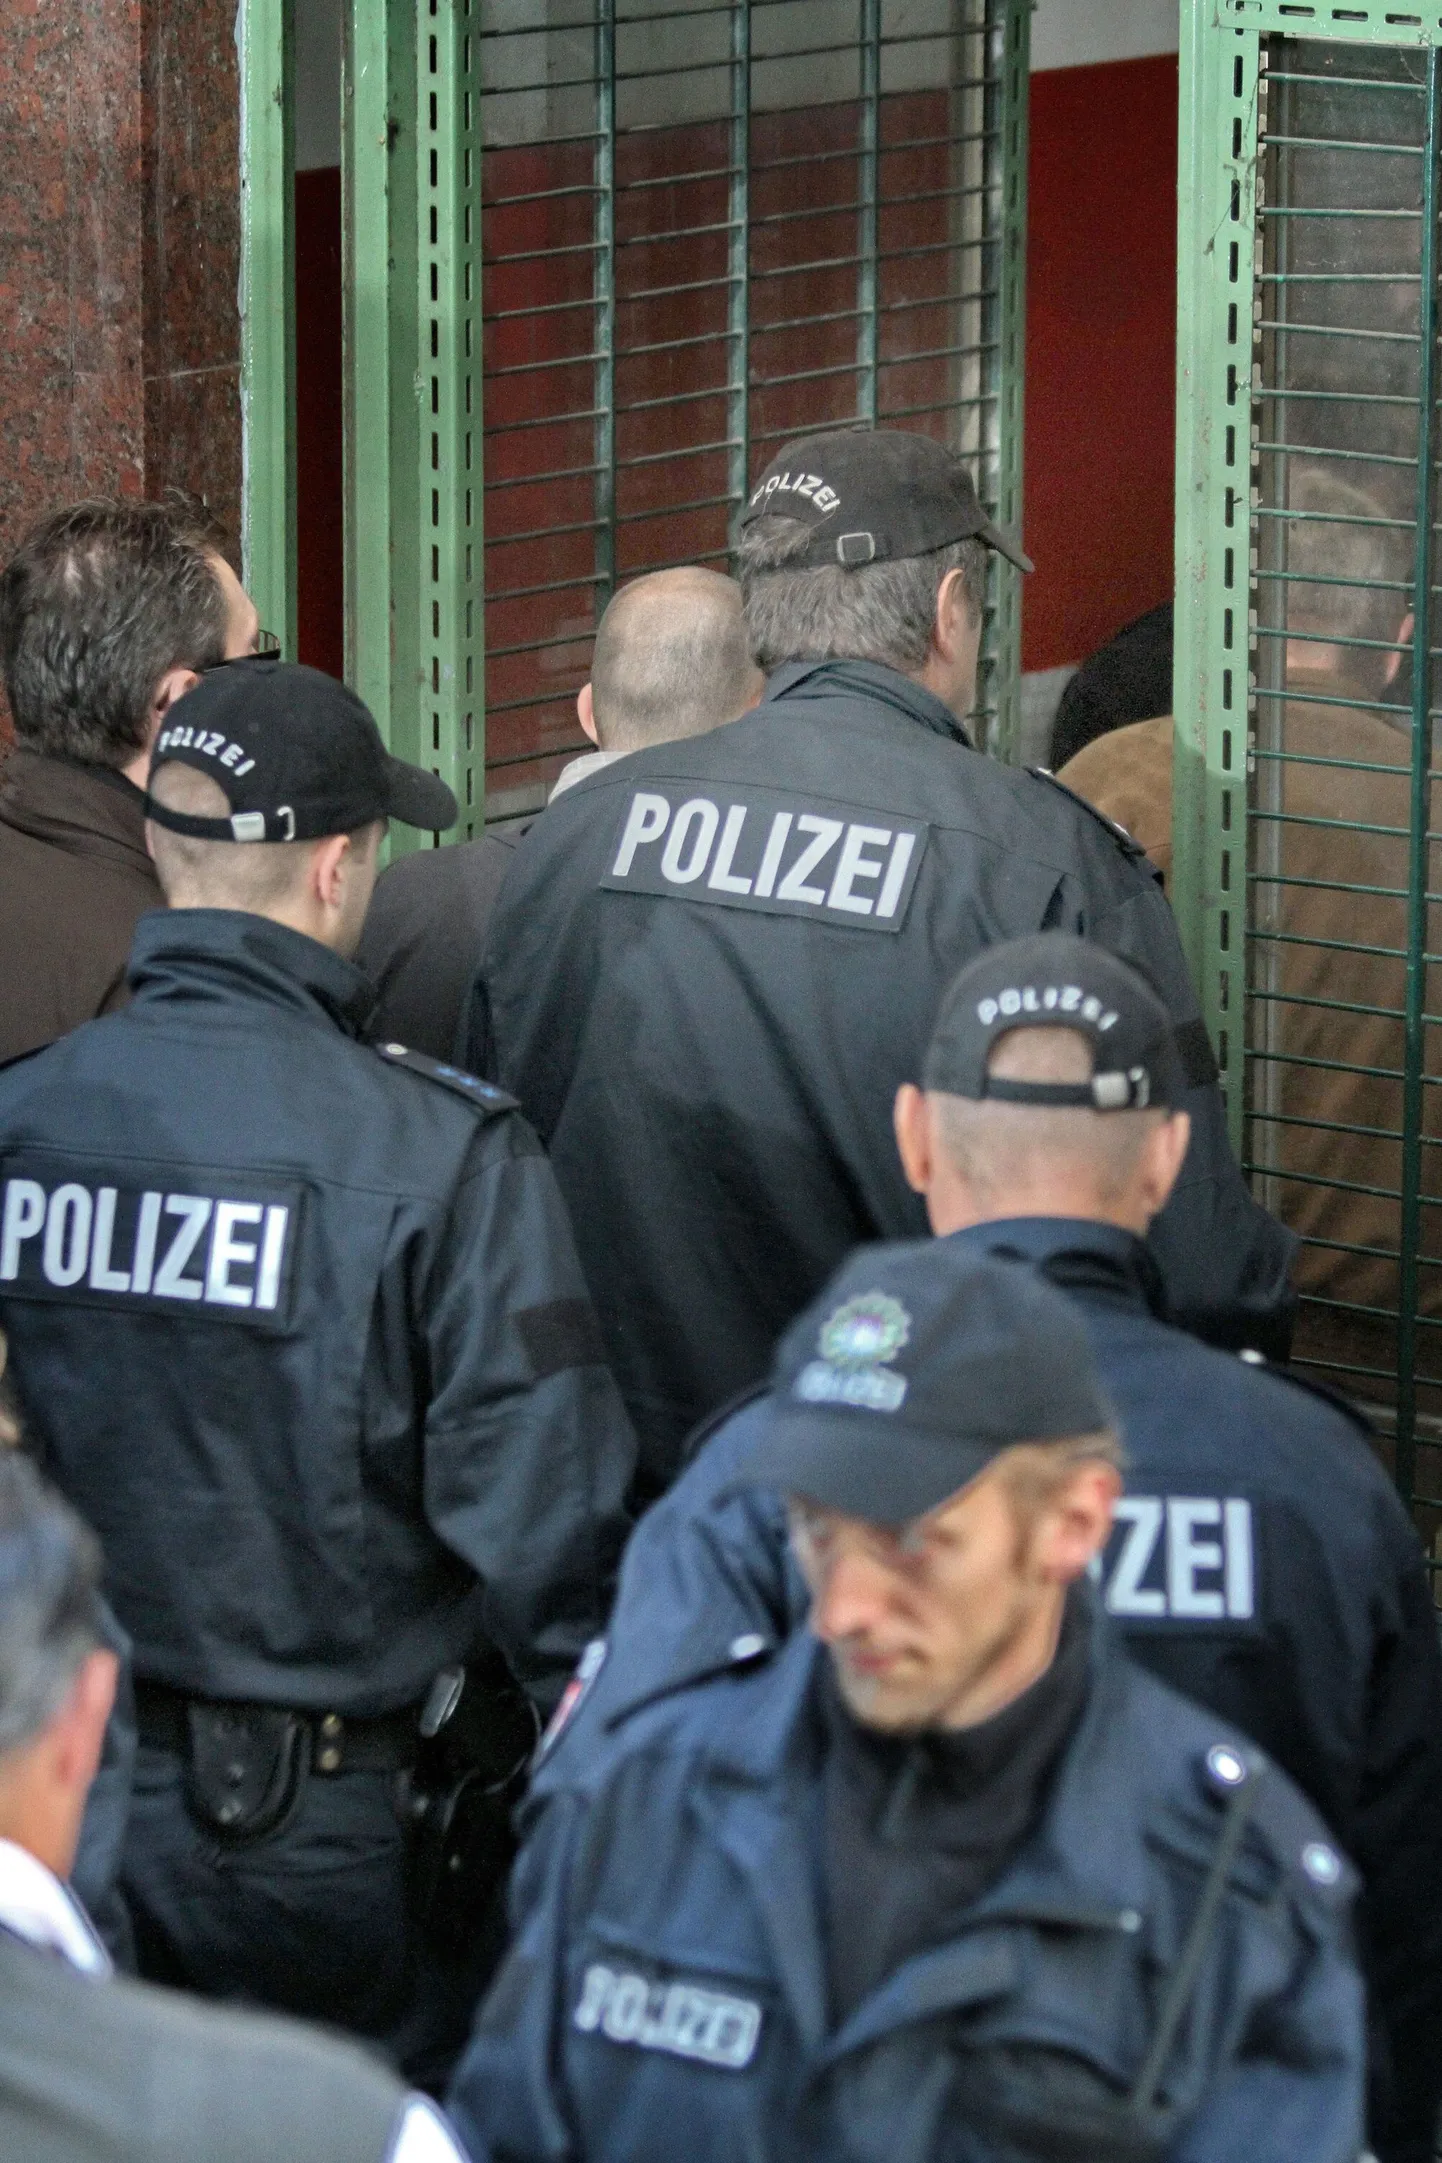 Saksa politsei kurikuulsasse mošeesse sisenemas